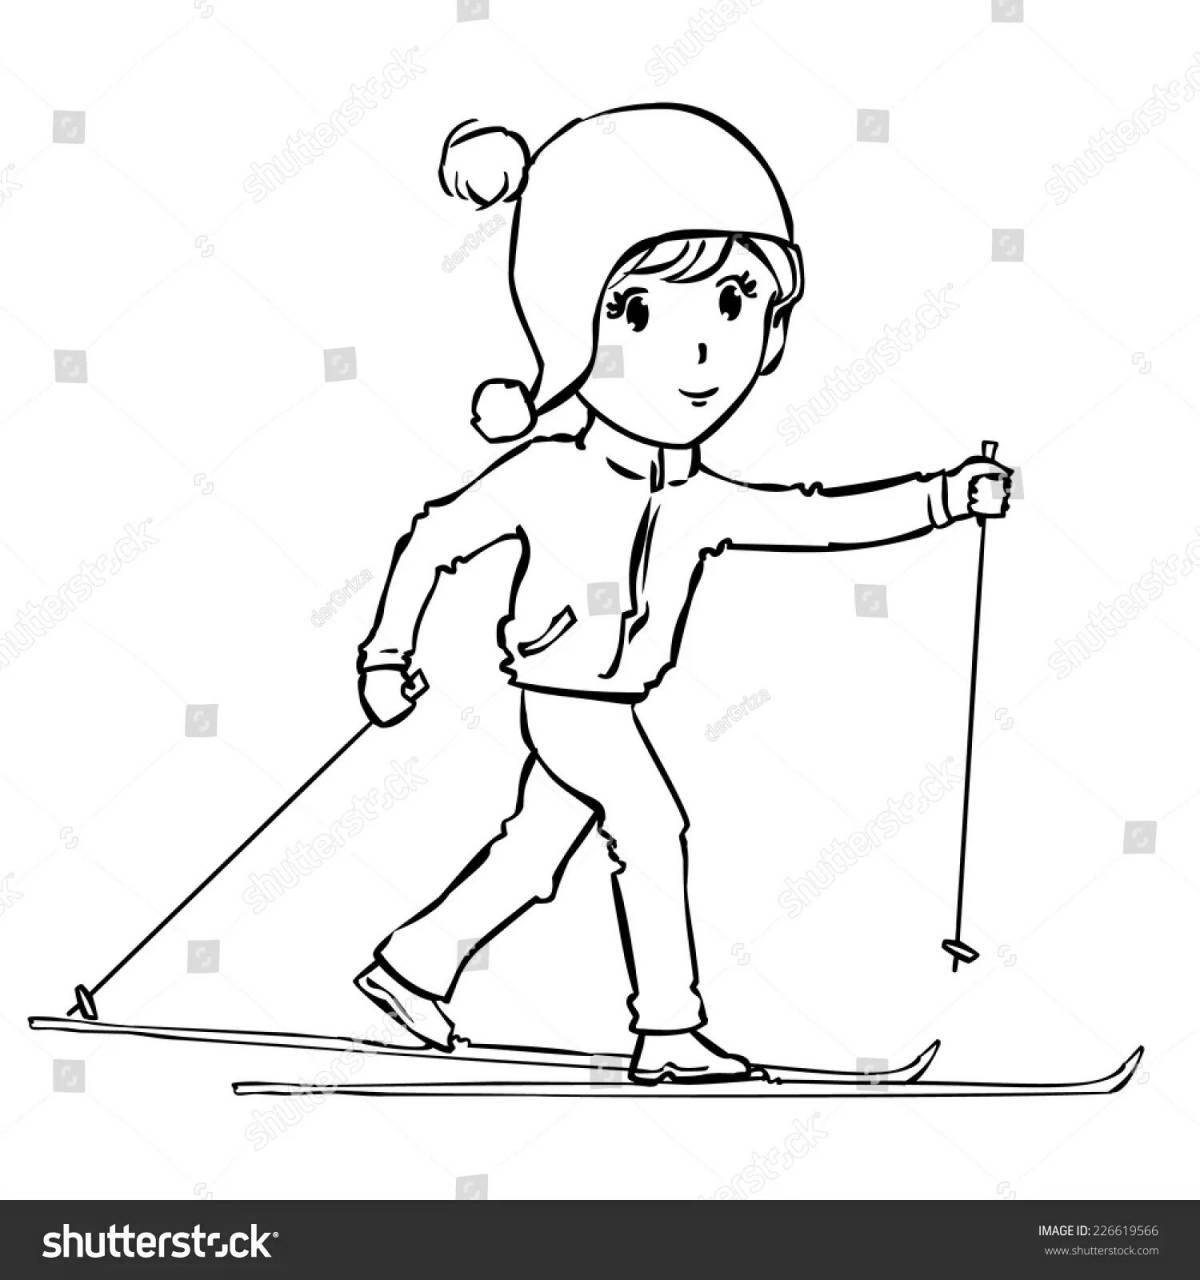 Ликующий мужчина на лыжах